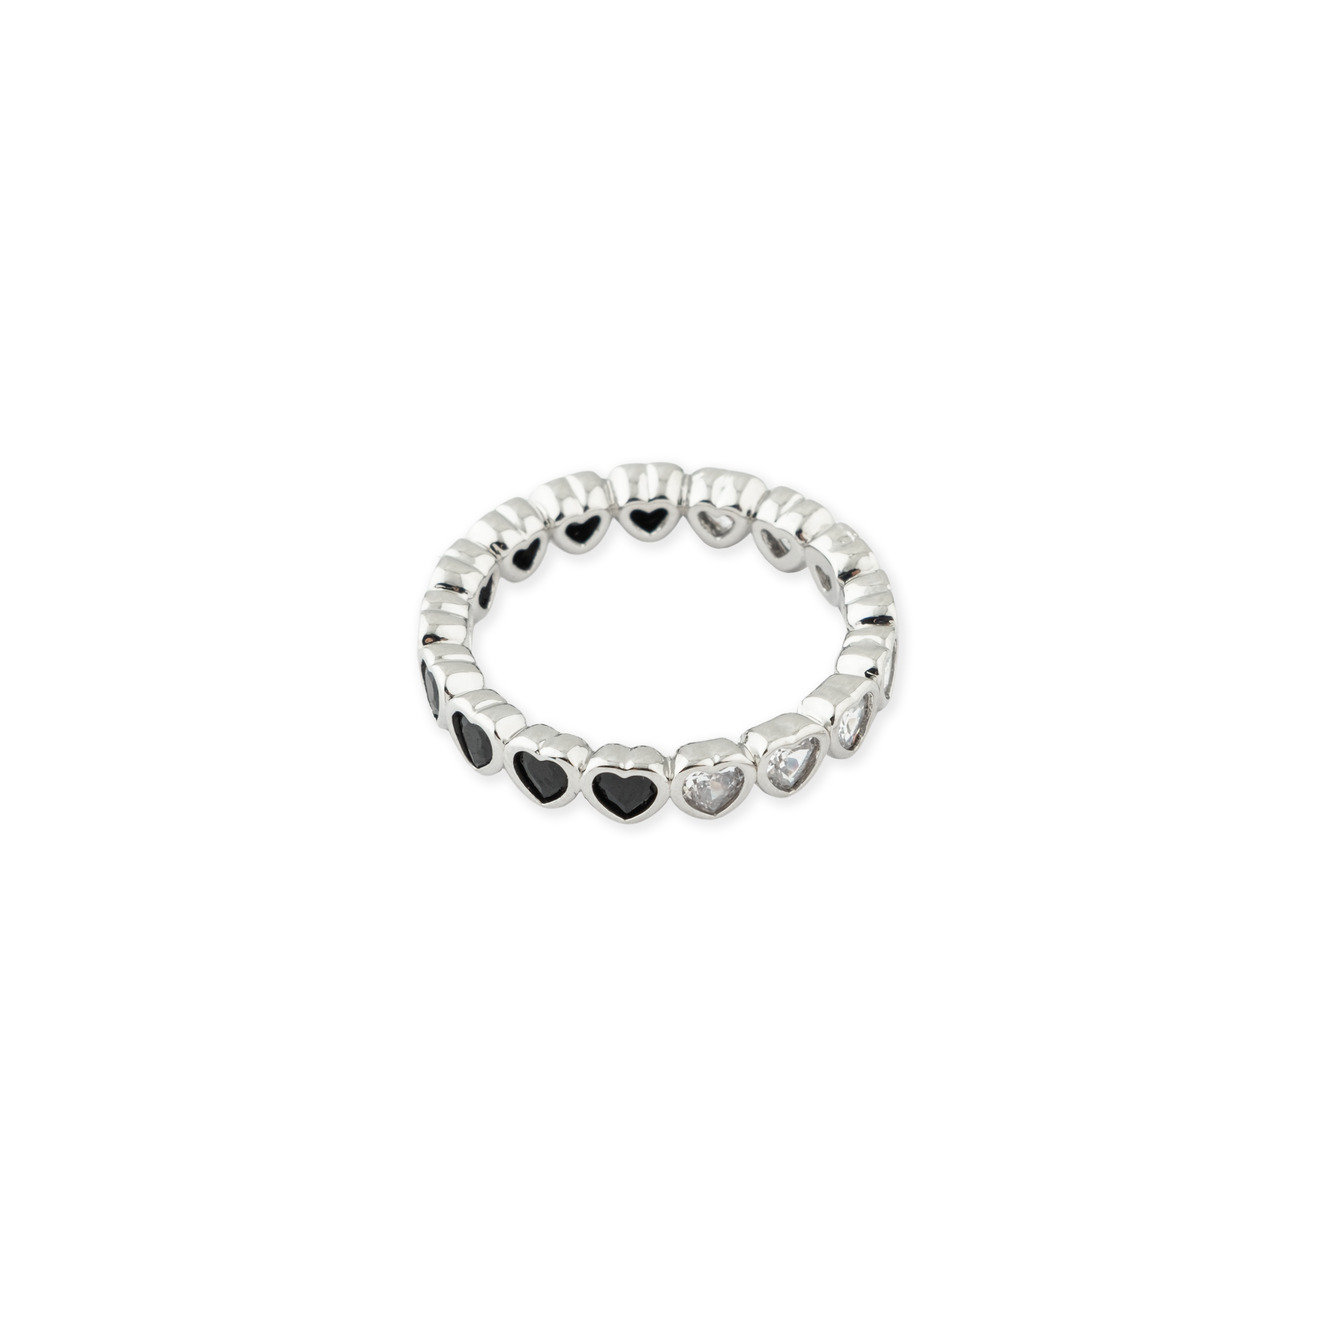 Herald Percy Серебристое кольцо из сердец с белыми и черными кристаллами lisa smith серебристое кольцо с кисточкой из цепочек